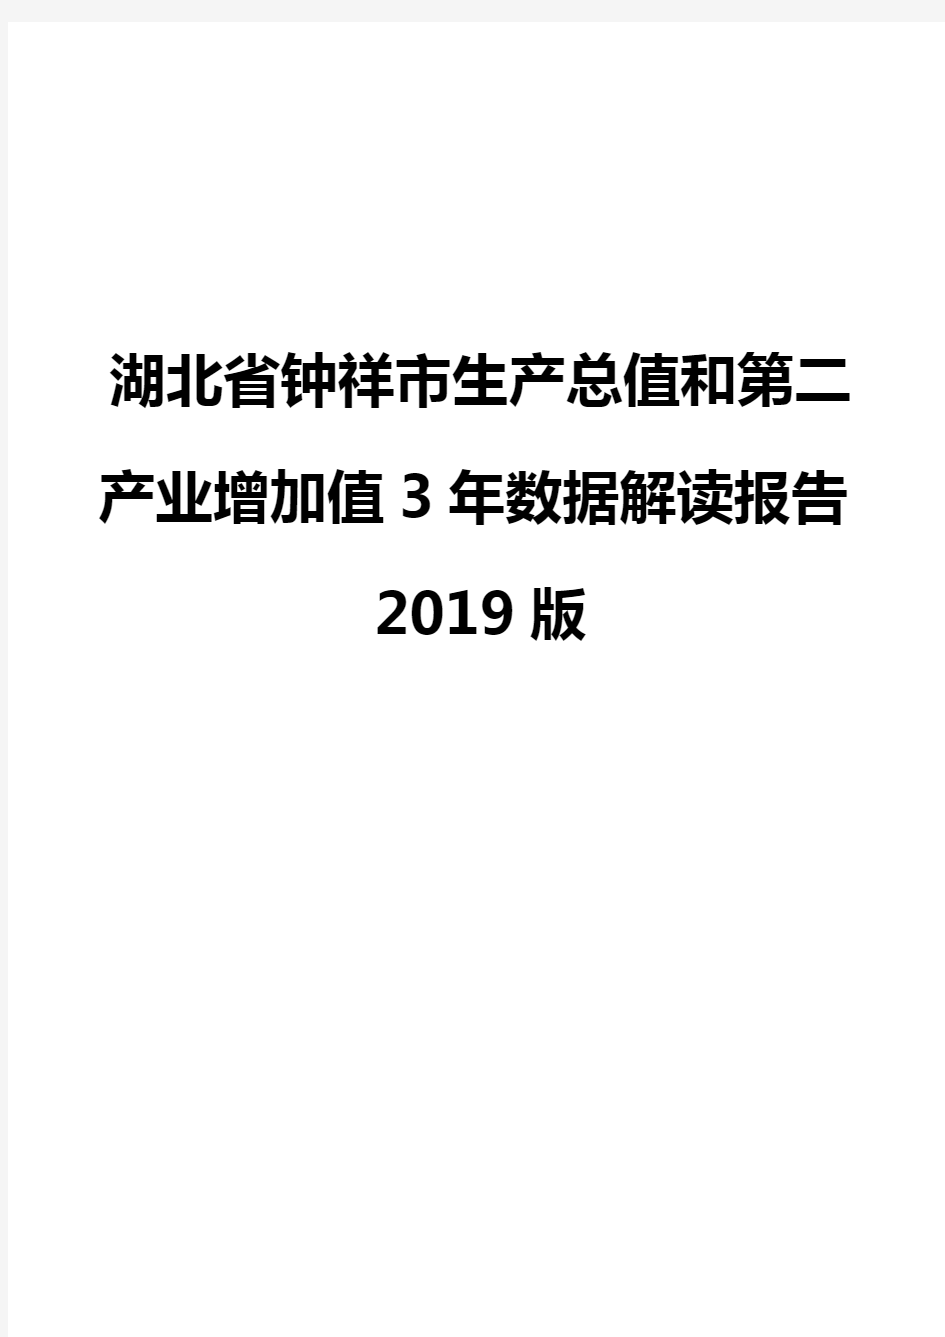 湖北省钟祥市生产总值和第二产业增加值3年数据解读报告2019版